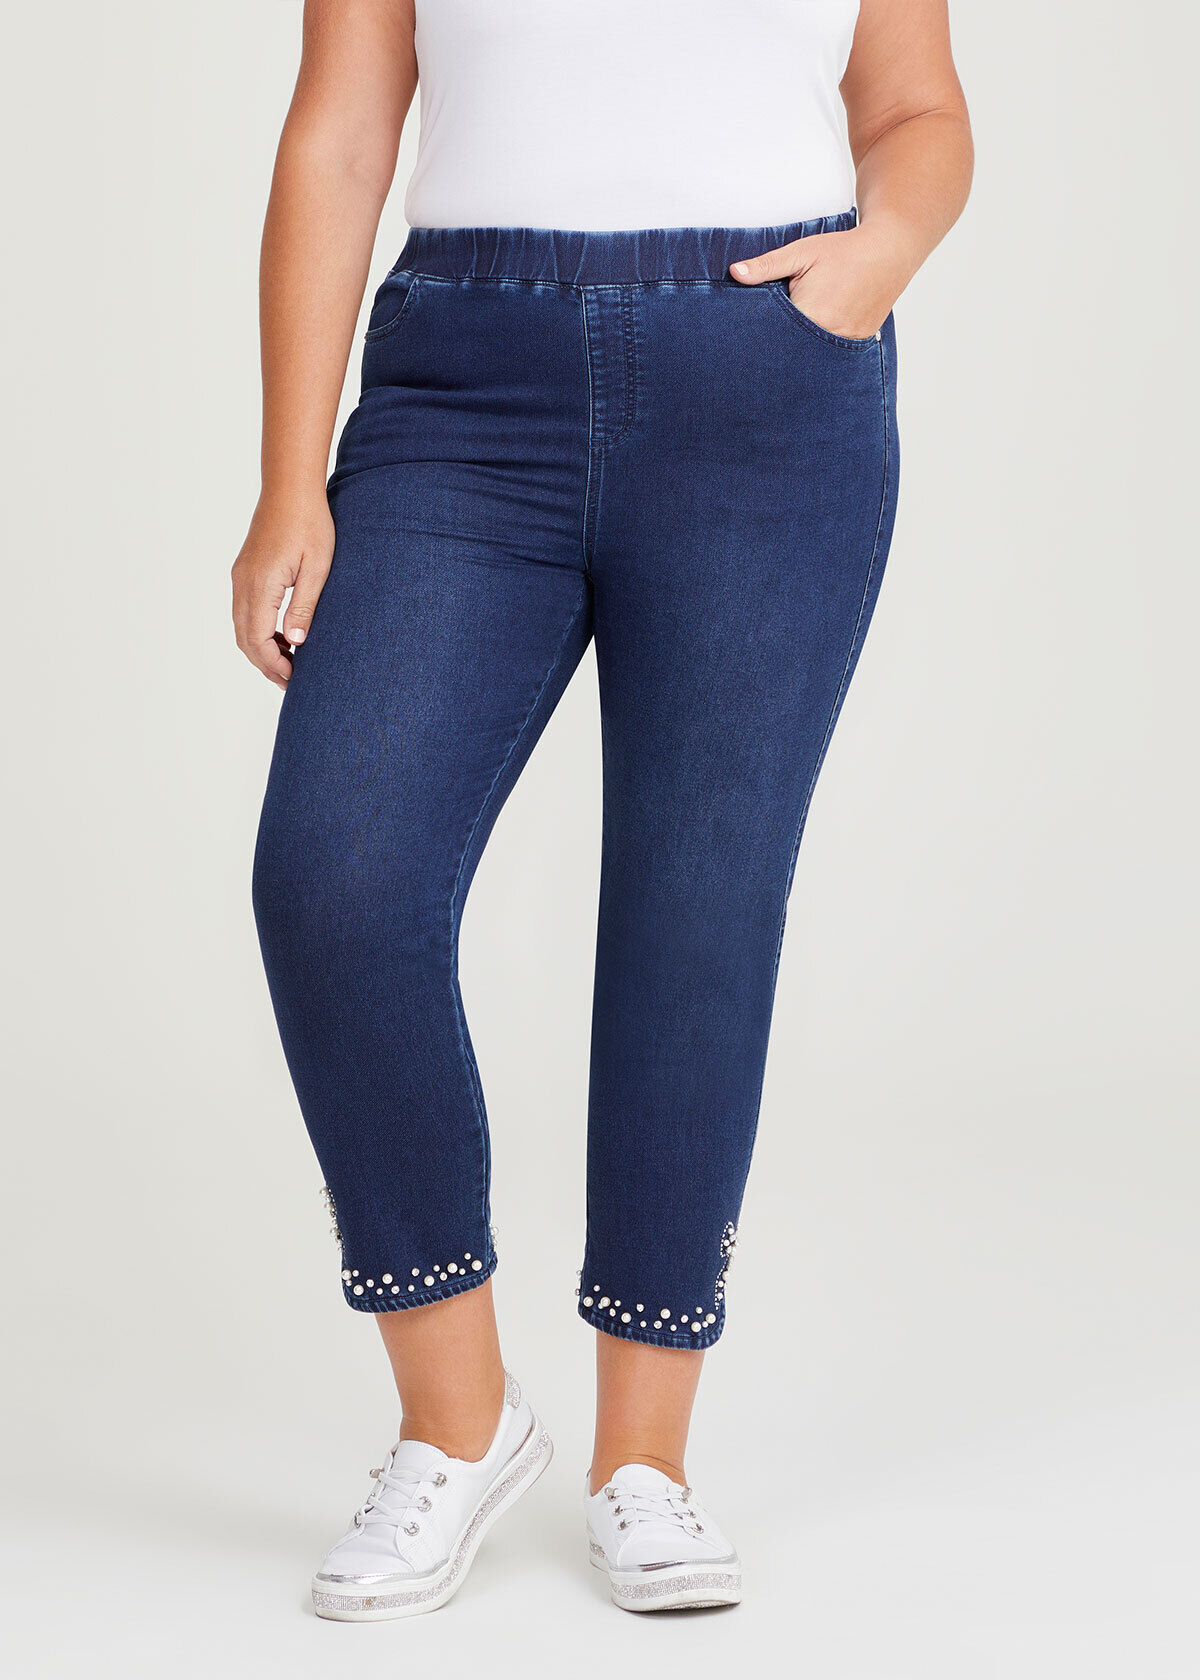 Bean Fleece Lined Jeans Womens | Best Women Fleece Lined Jeans - Jeans Women  - Aliexpress